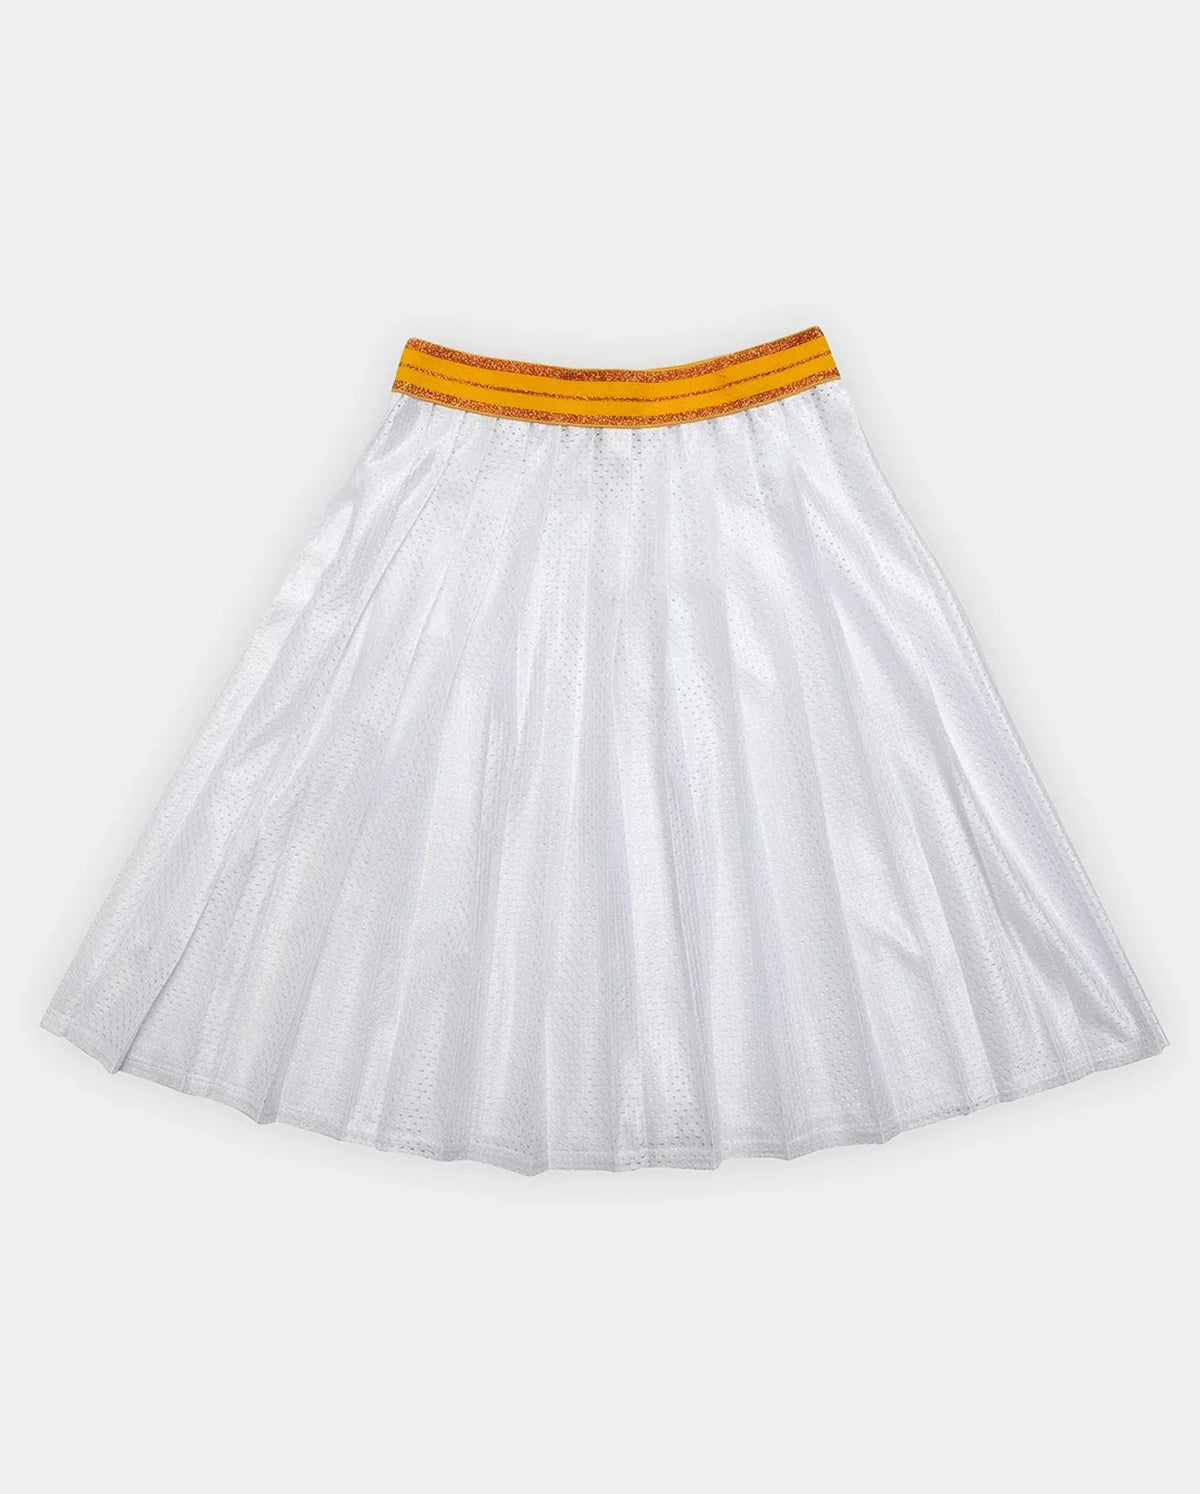 Veronica Skirt In White